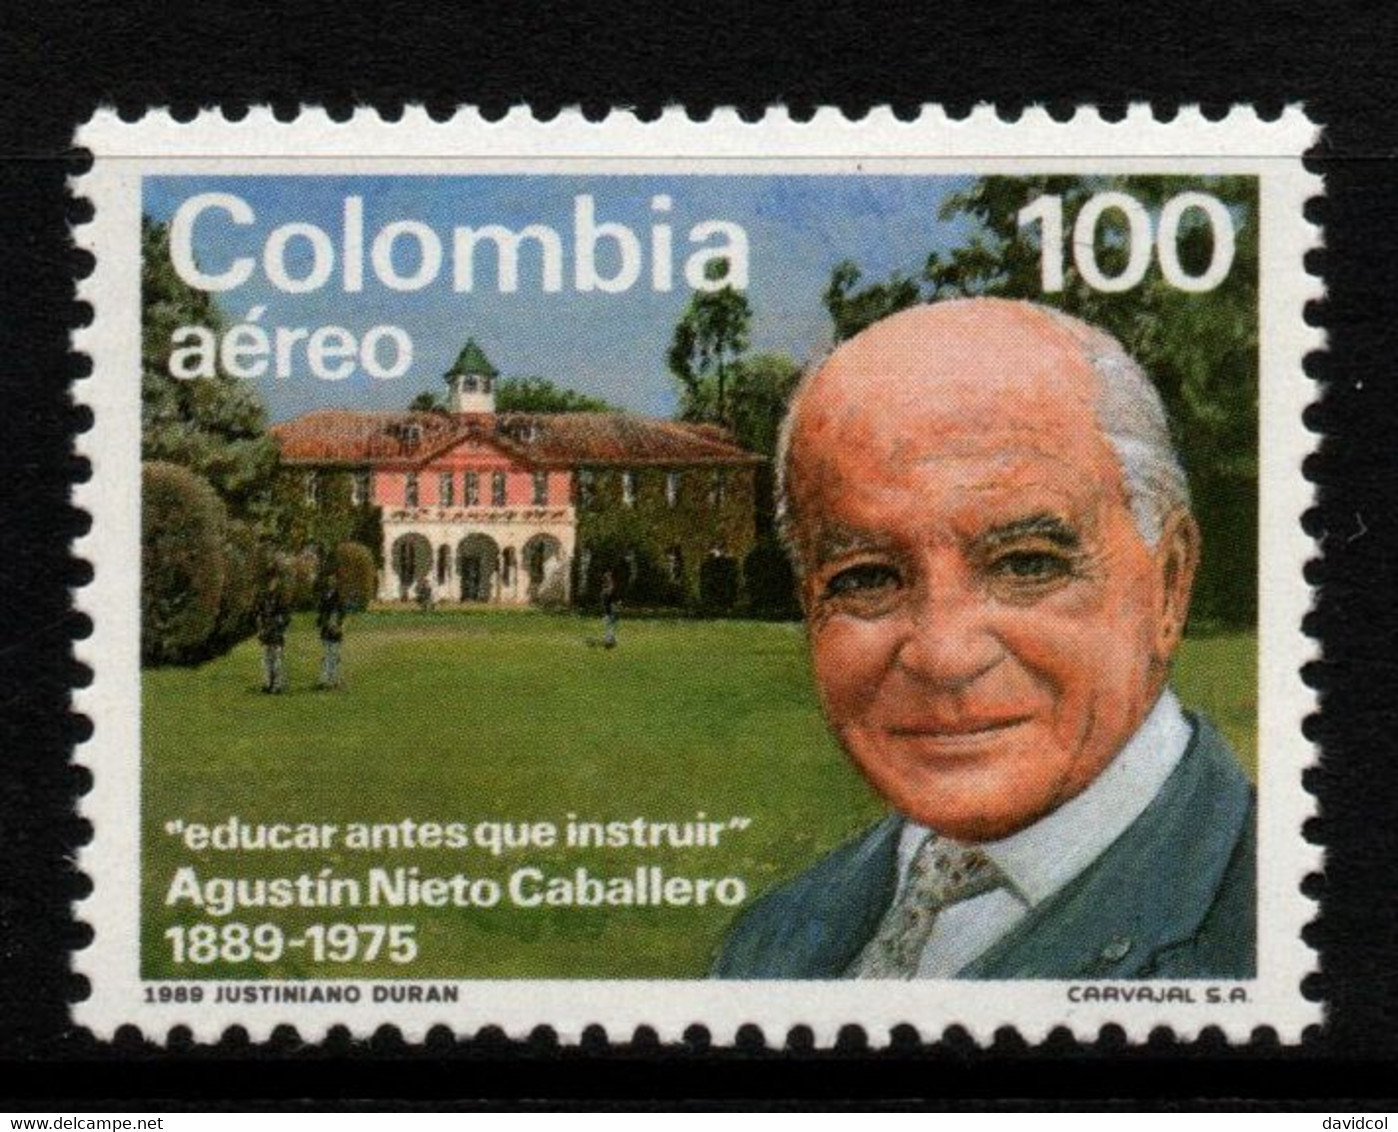 02- KOLUMBIEN - 1989 - MI#:1746 - MNH- AGUSTIN NIETO CABALLERO - Colombia